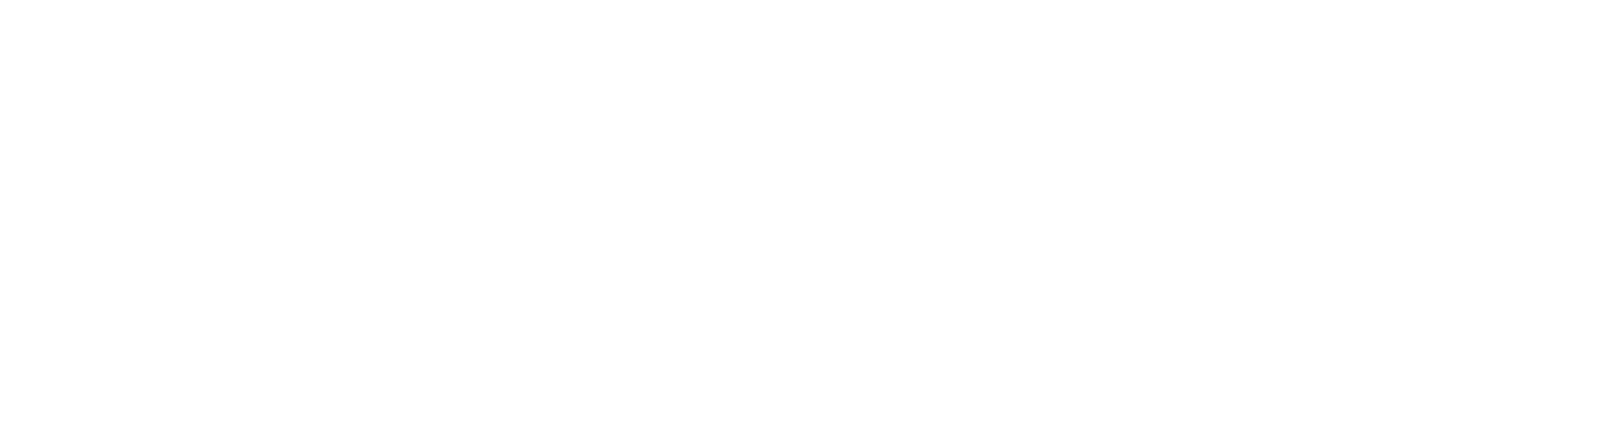 Forestar Group
 logo large for dark backgrounds (transparent PNG)